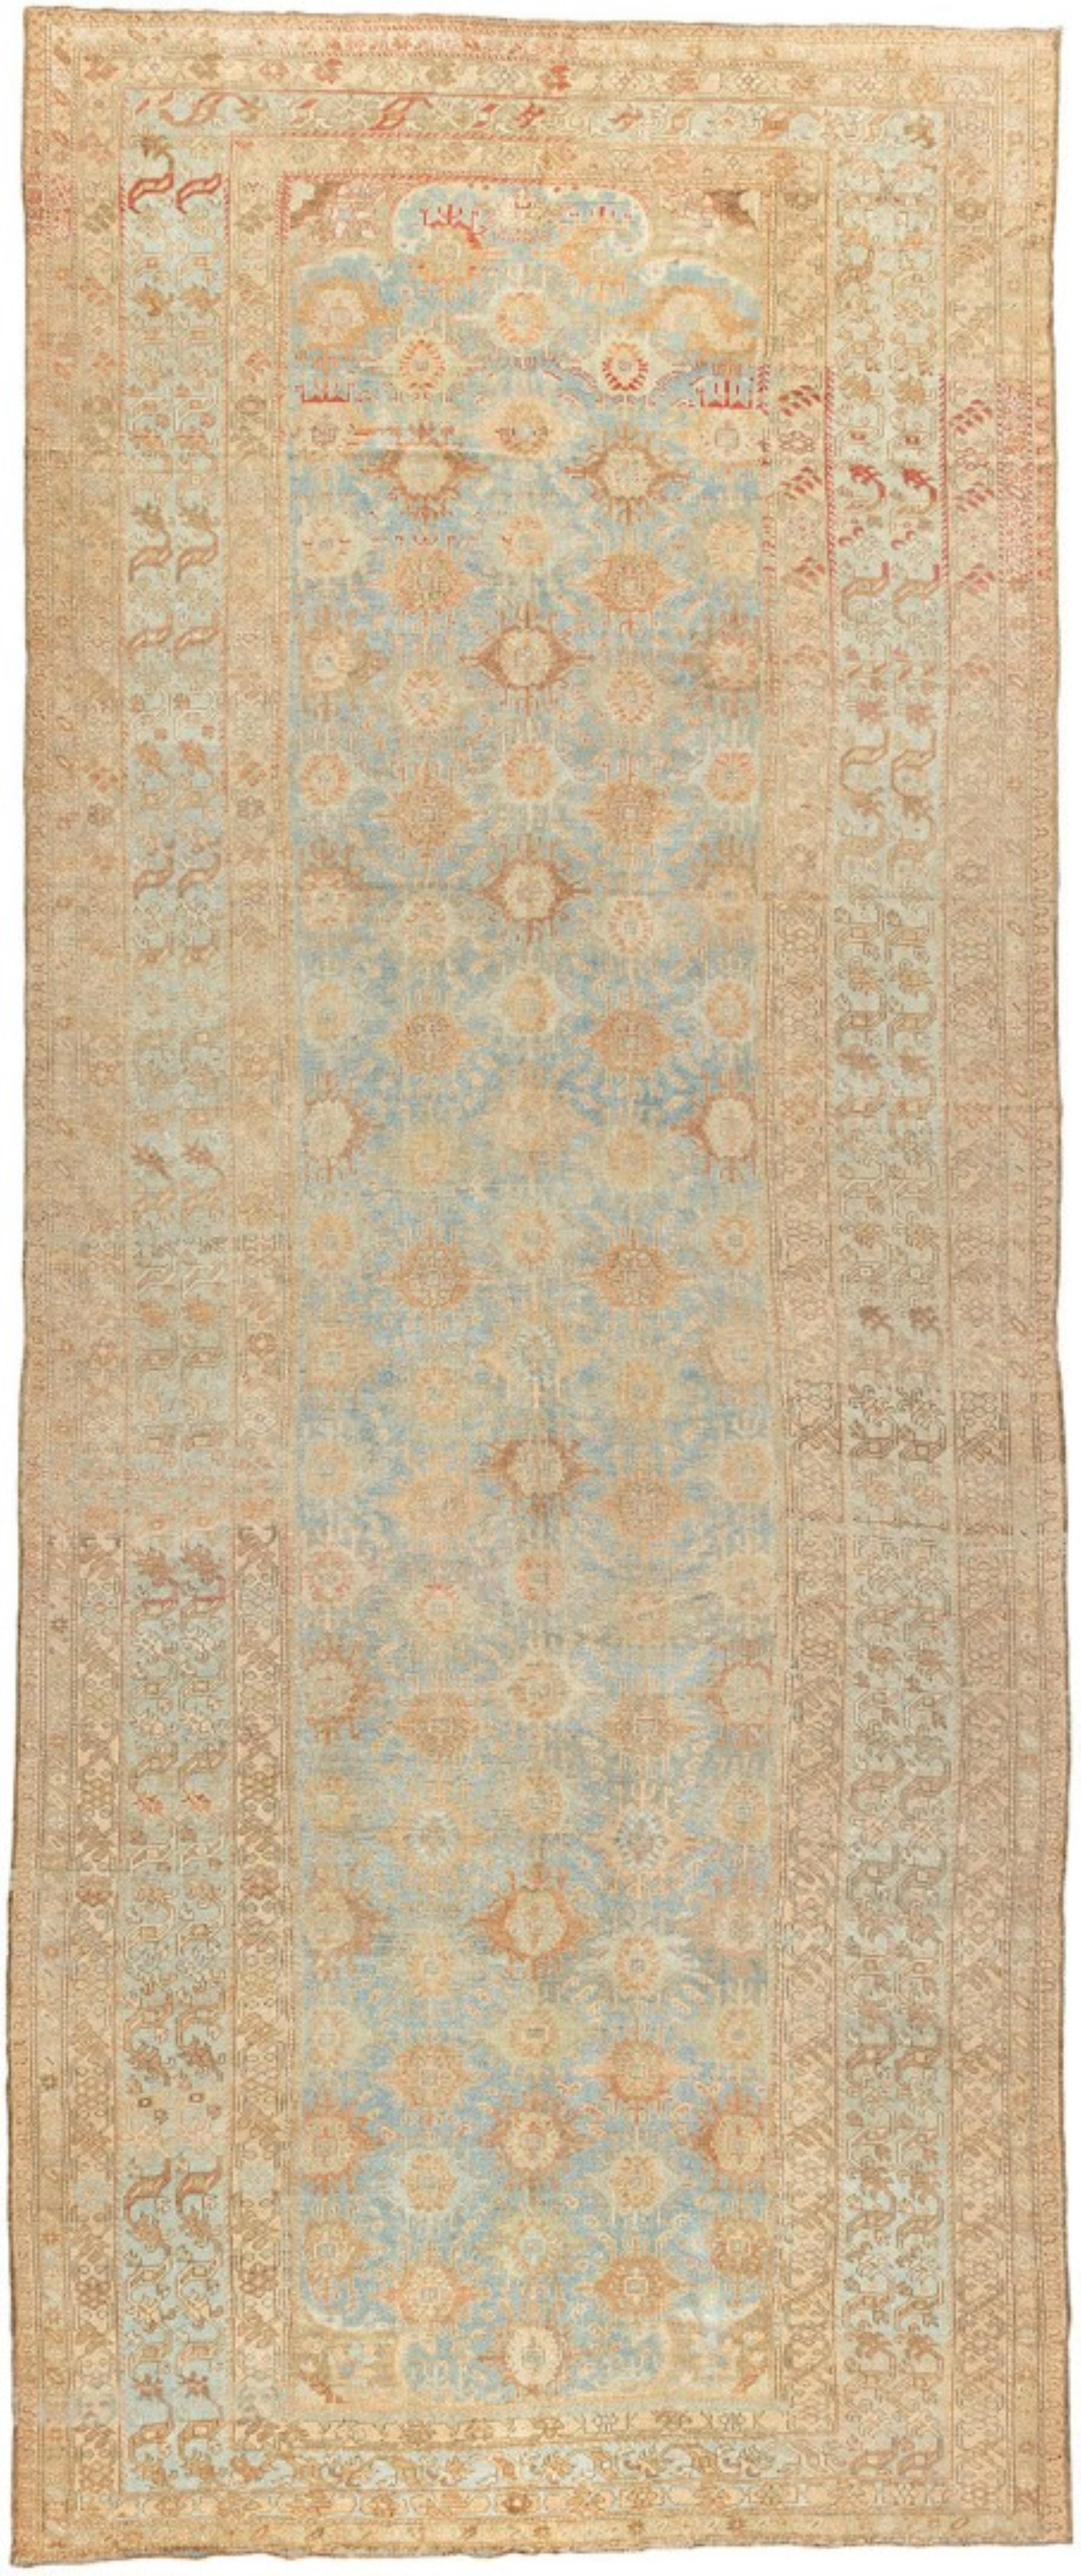 un tapis de corridor Malayer du début du 20e siècle dans les tons bleu clair et sable

Mesures : 8' x 19'4